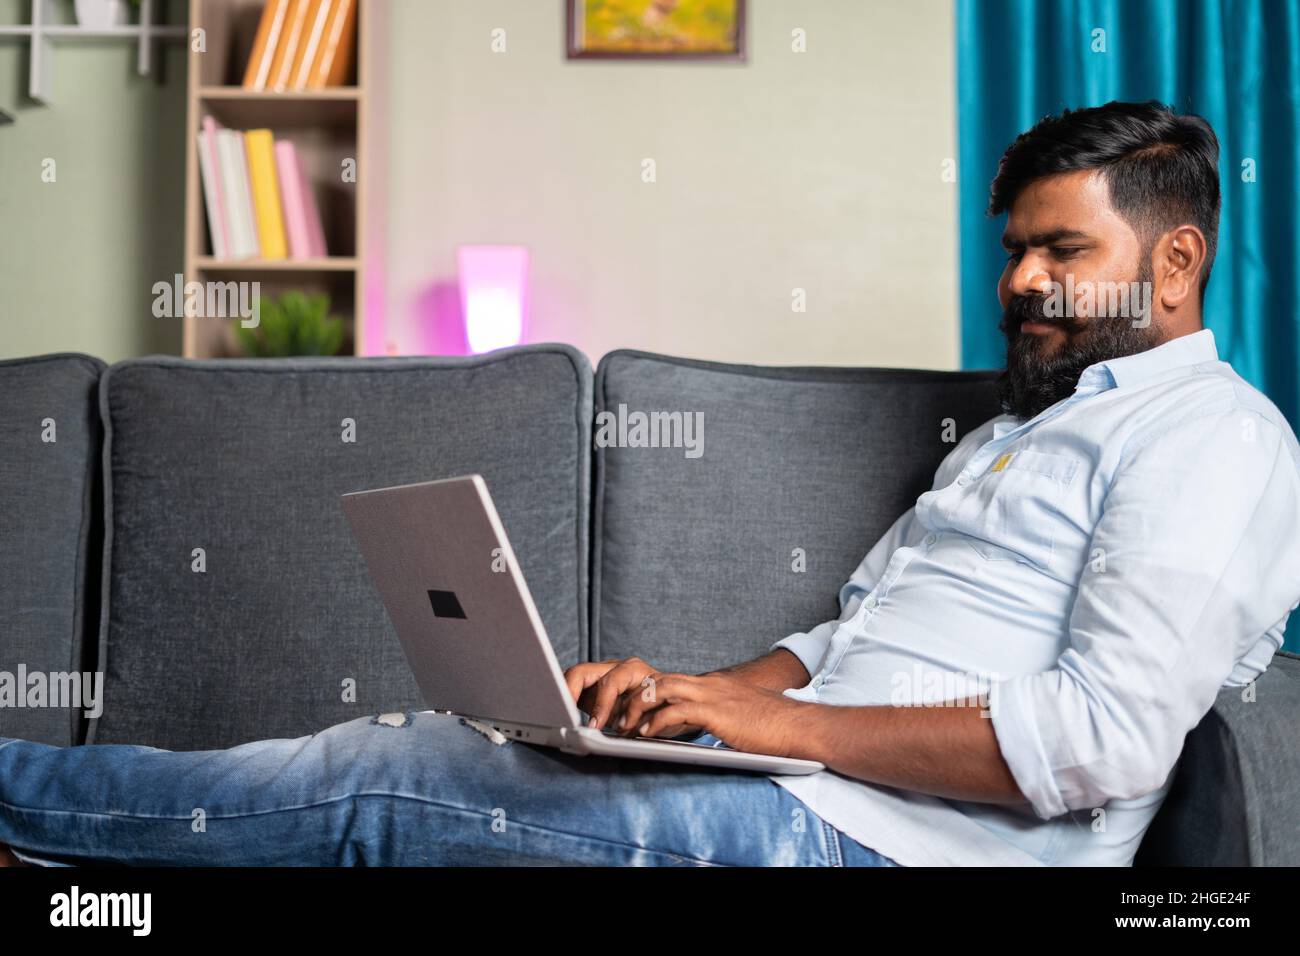 jeune homme souriant, occupé à utiliser un ordinateur portable tout en étant assis sur safa à la maison - concept d'utiliser les médias sociaux, surfer sur le web, travailler à la maison et la technologie Banque D'Images